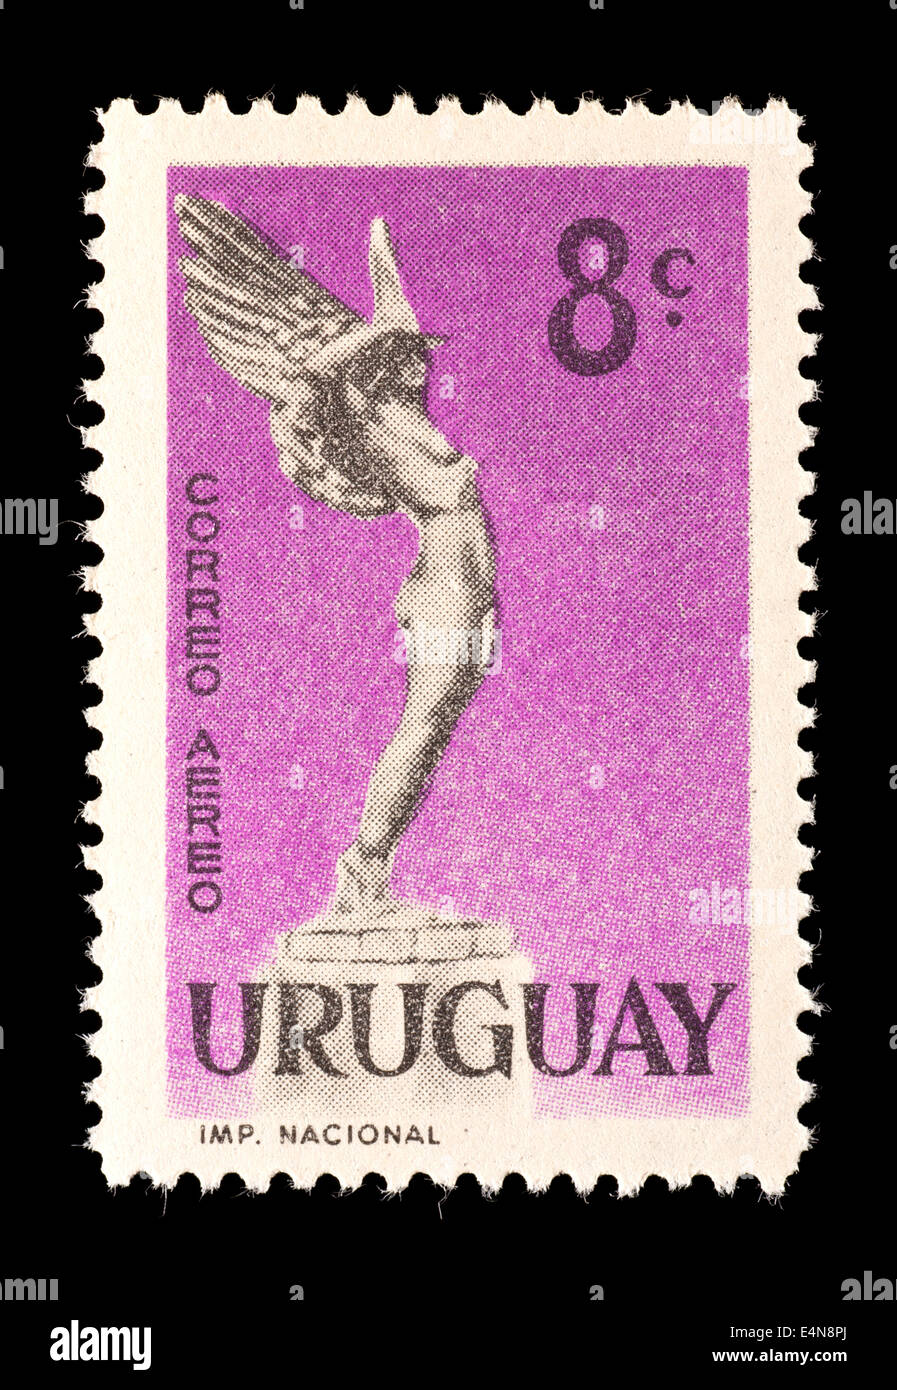 Francobollo da Uruguay raffigurante la scultura "fuga", il monumento ai caduti aviatori. Foto Stock